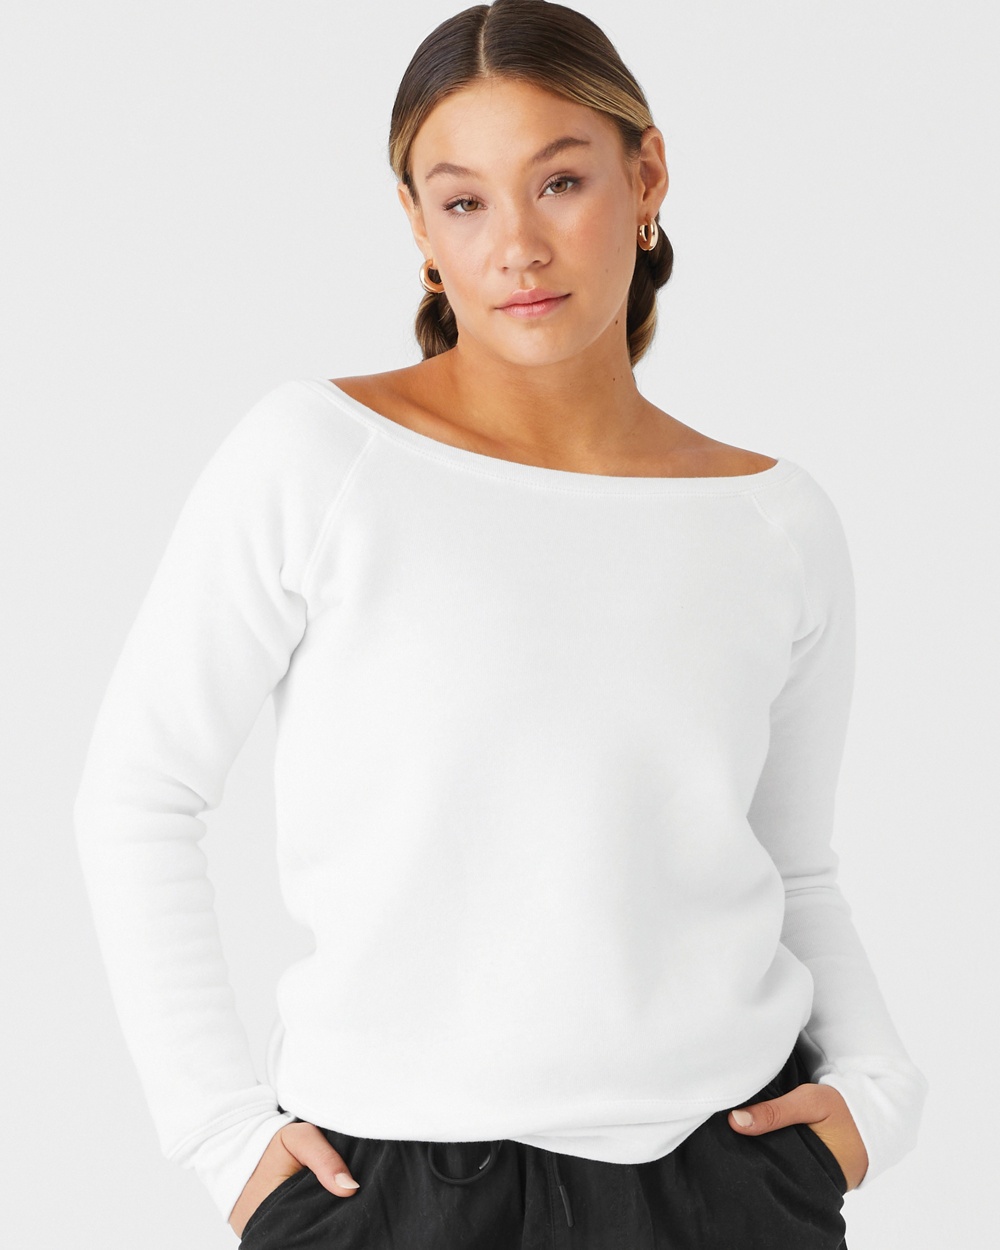 Bella+Canvas 7501 Women's Sponge Fleece Wide Neck Sweatshirt 